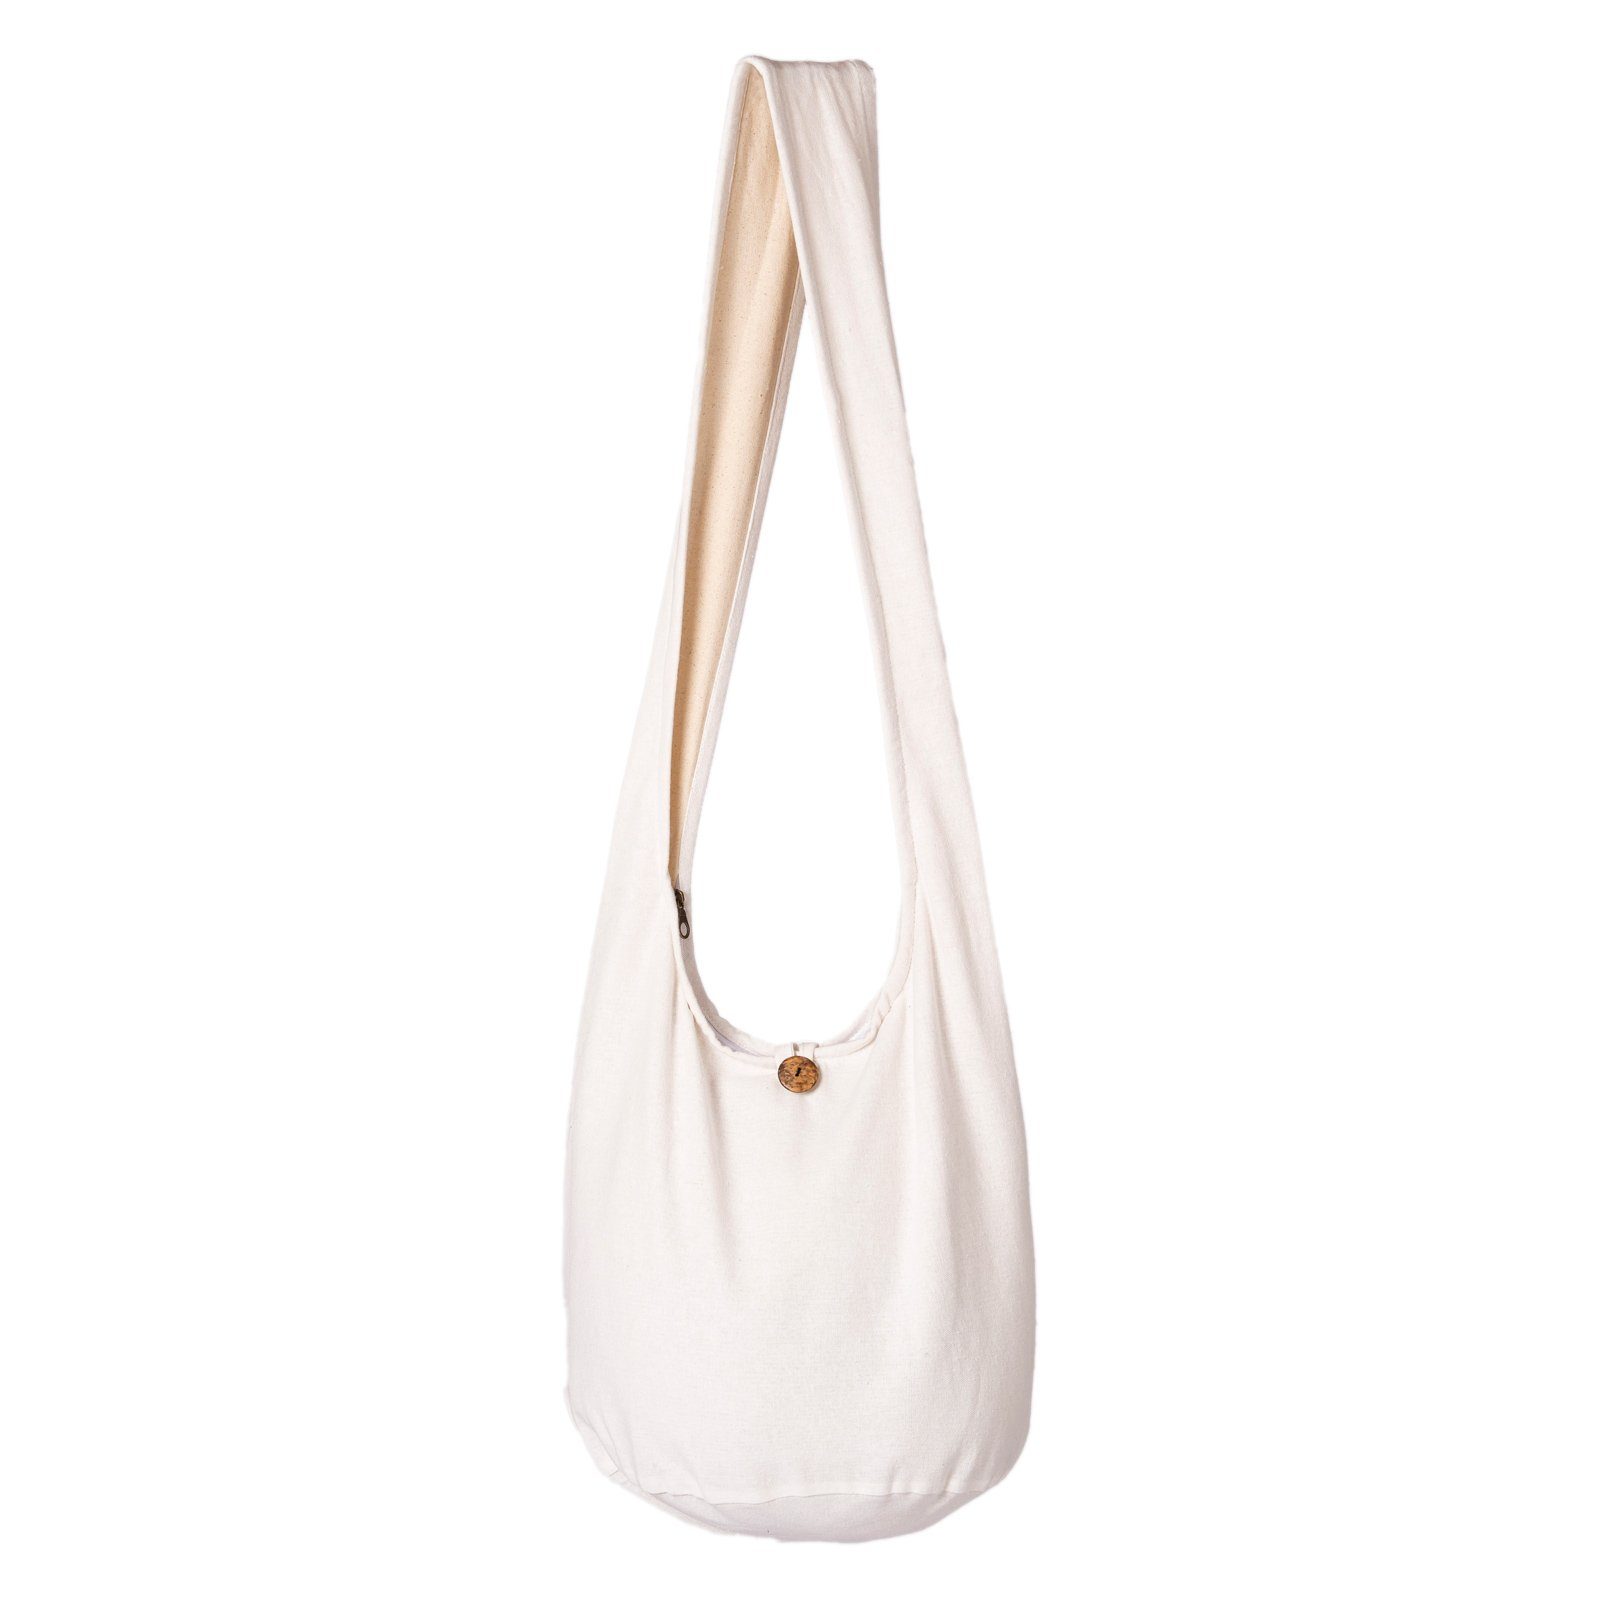 Neue Ankunft PANASIAM Beuteltasche Schulterbeutel einfarbig Schultertasche 100% Strandtasche aus weiß Umhängetasche 2 oder als Handtasche Wickeltasche auch Größen, in Baumwolle